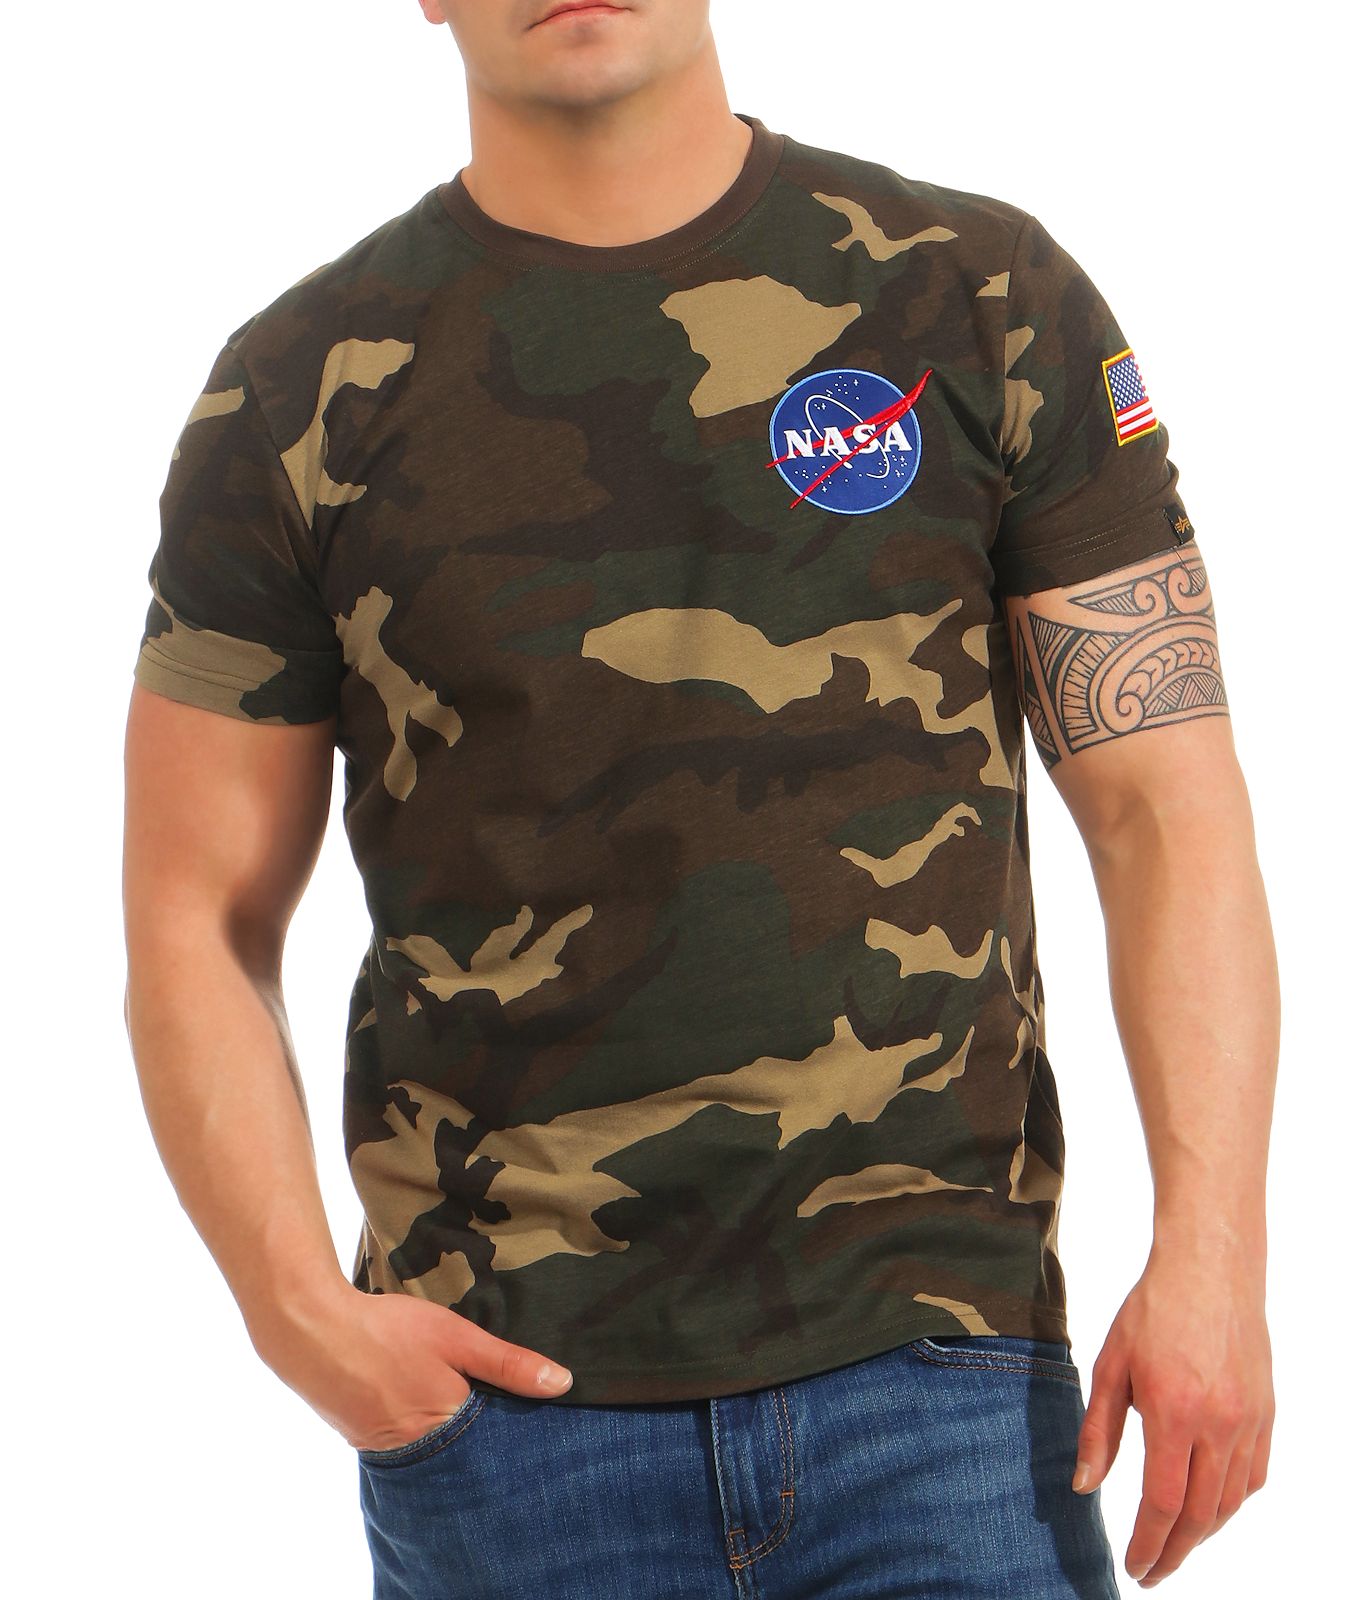 Alpha Industries Herren T-Shirt Space Shuttle T 176507 Männer kurzarm Tee  Basic | eBay